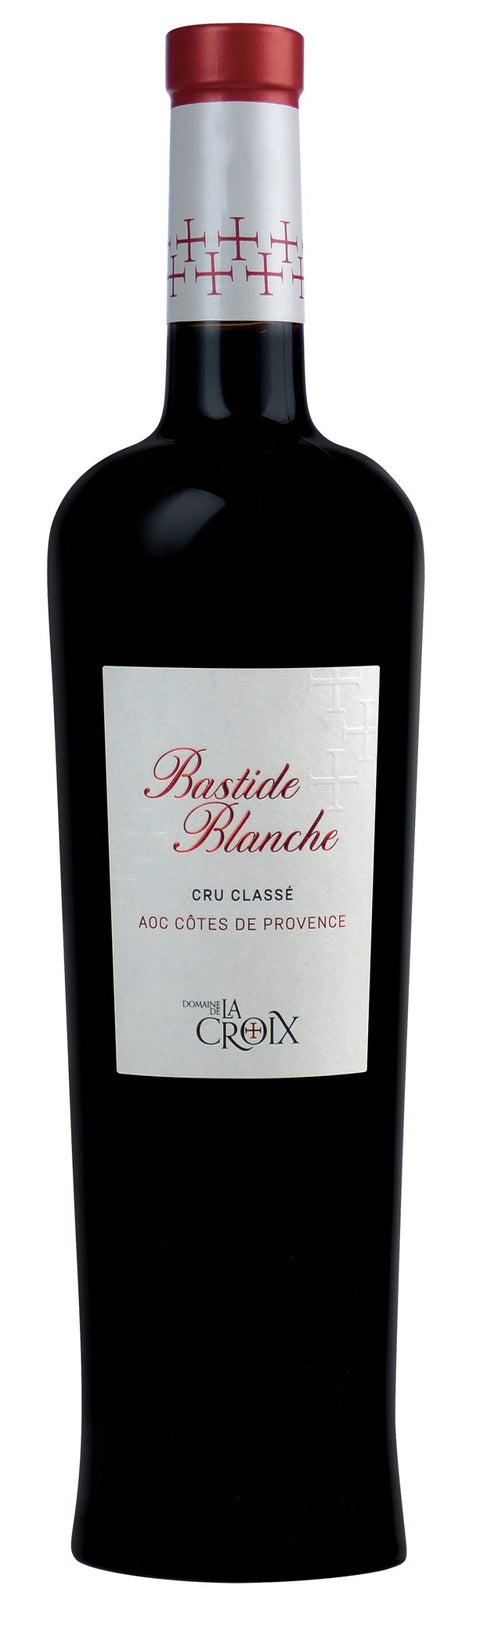 Bastide Blanche Rouge, Côtes de Provence Cru Classé 2016 - 150 cl